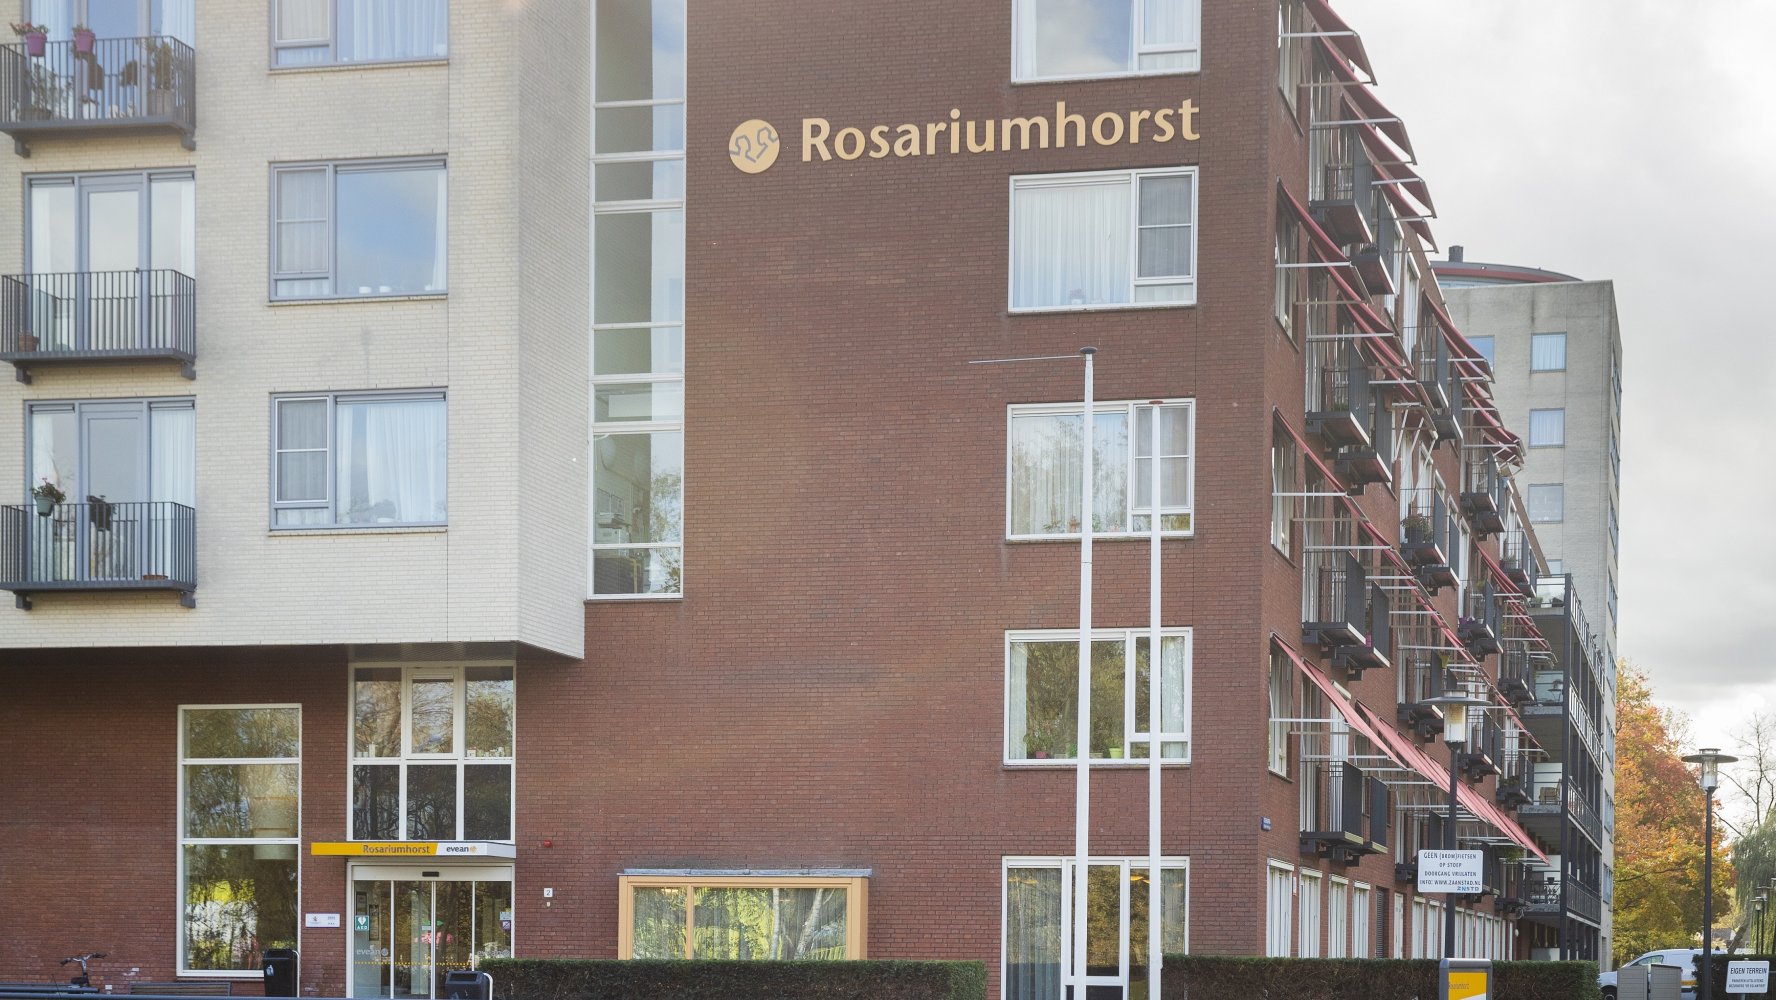 werkenbij Evean vacatures locatie Rosariumhorst Krommenie